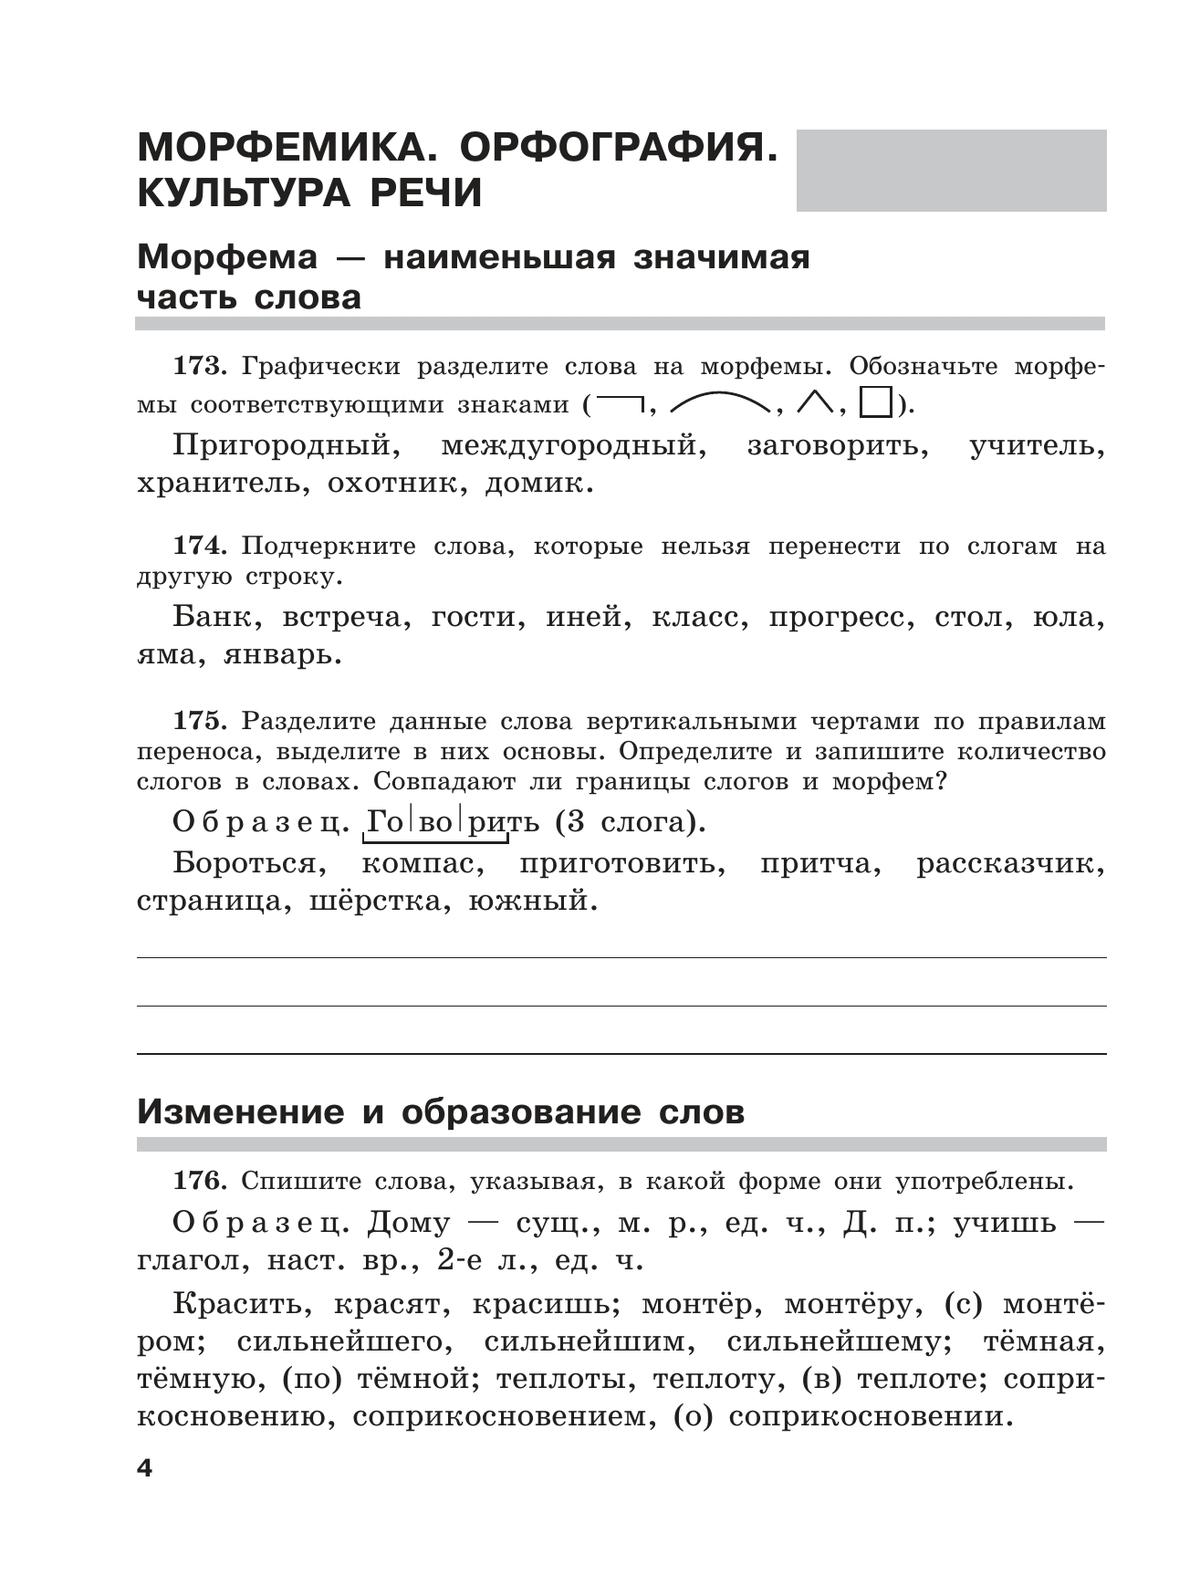 Скорая помощь по русскому языку. Рабочая тетрадь. 5 класс. В 2 ч. Часть 2 7